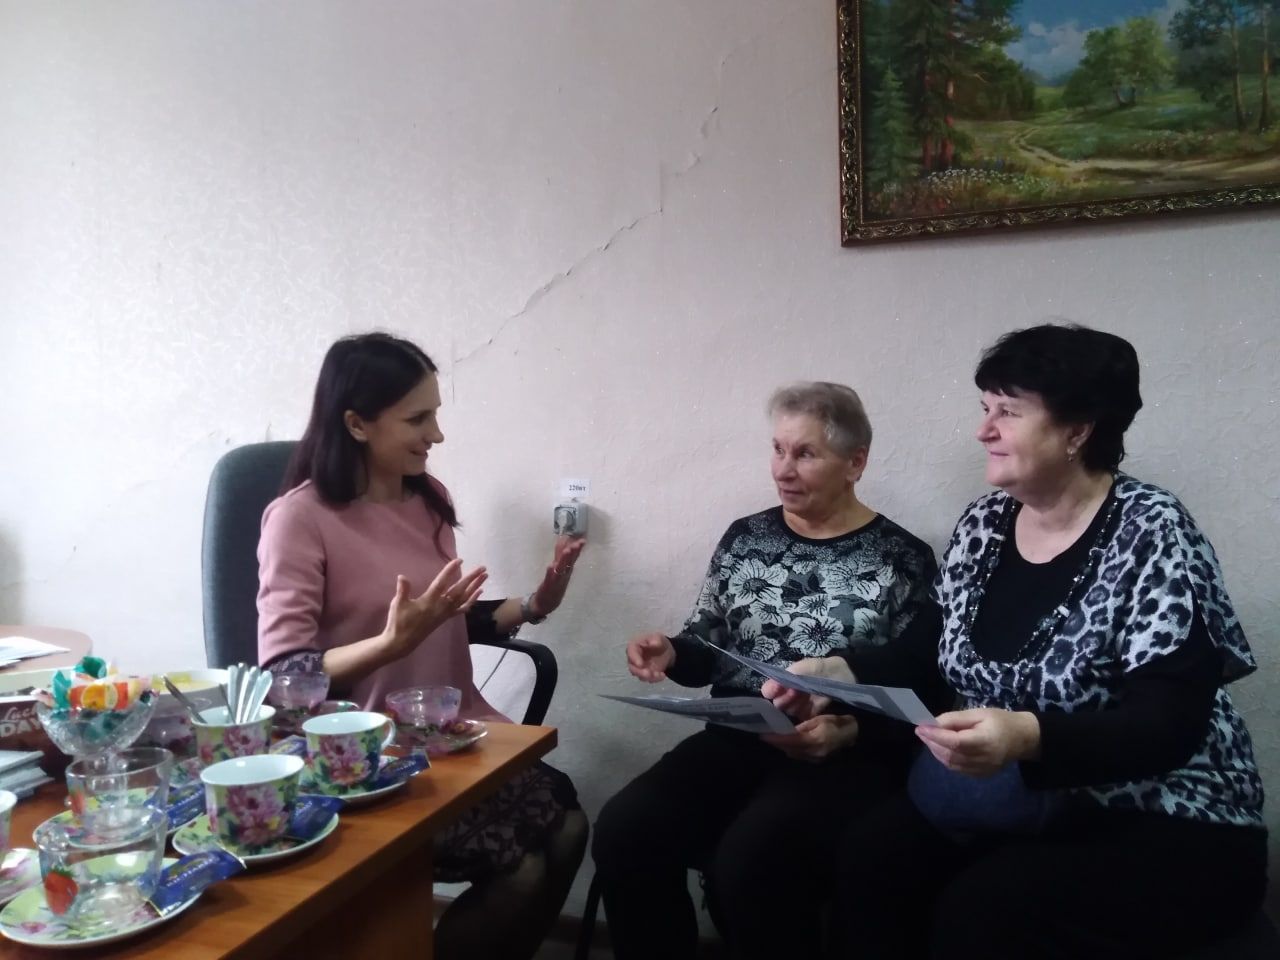 Ульяновские юристы поговорили об ответственности и обязанностях в правовой сфере